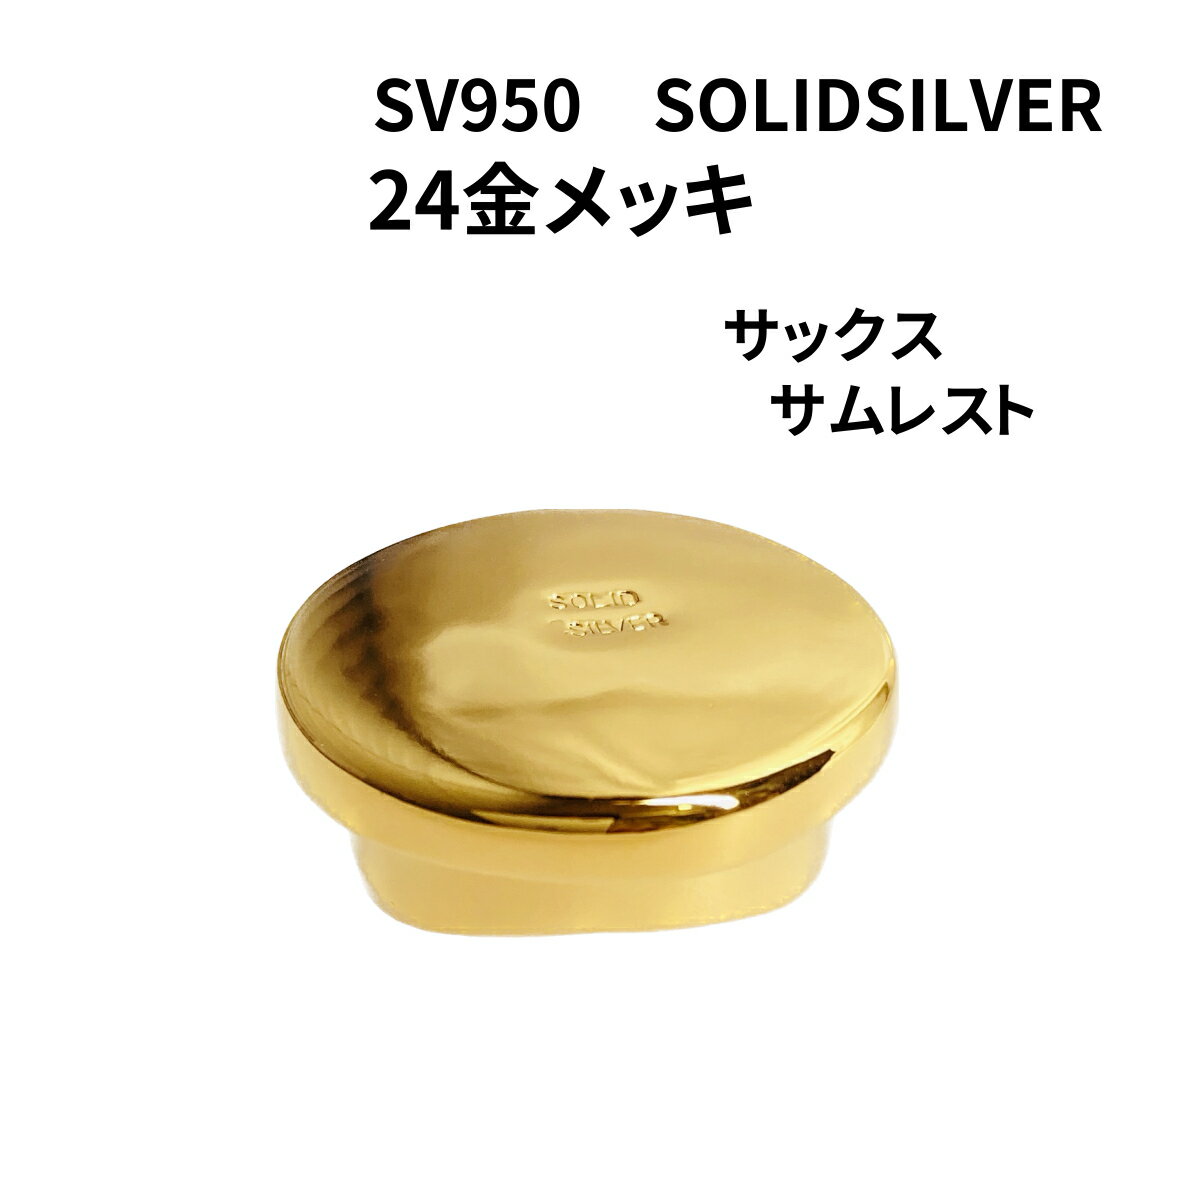 SOLID SILVER 24金メッキ サックス サムレスト 銀無垢 SV950 刻印入 日本製